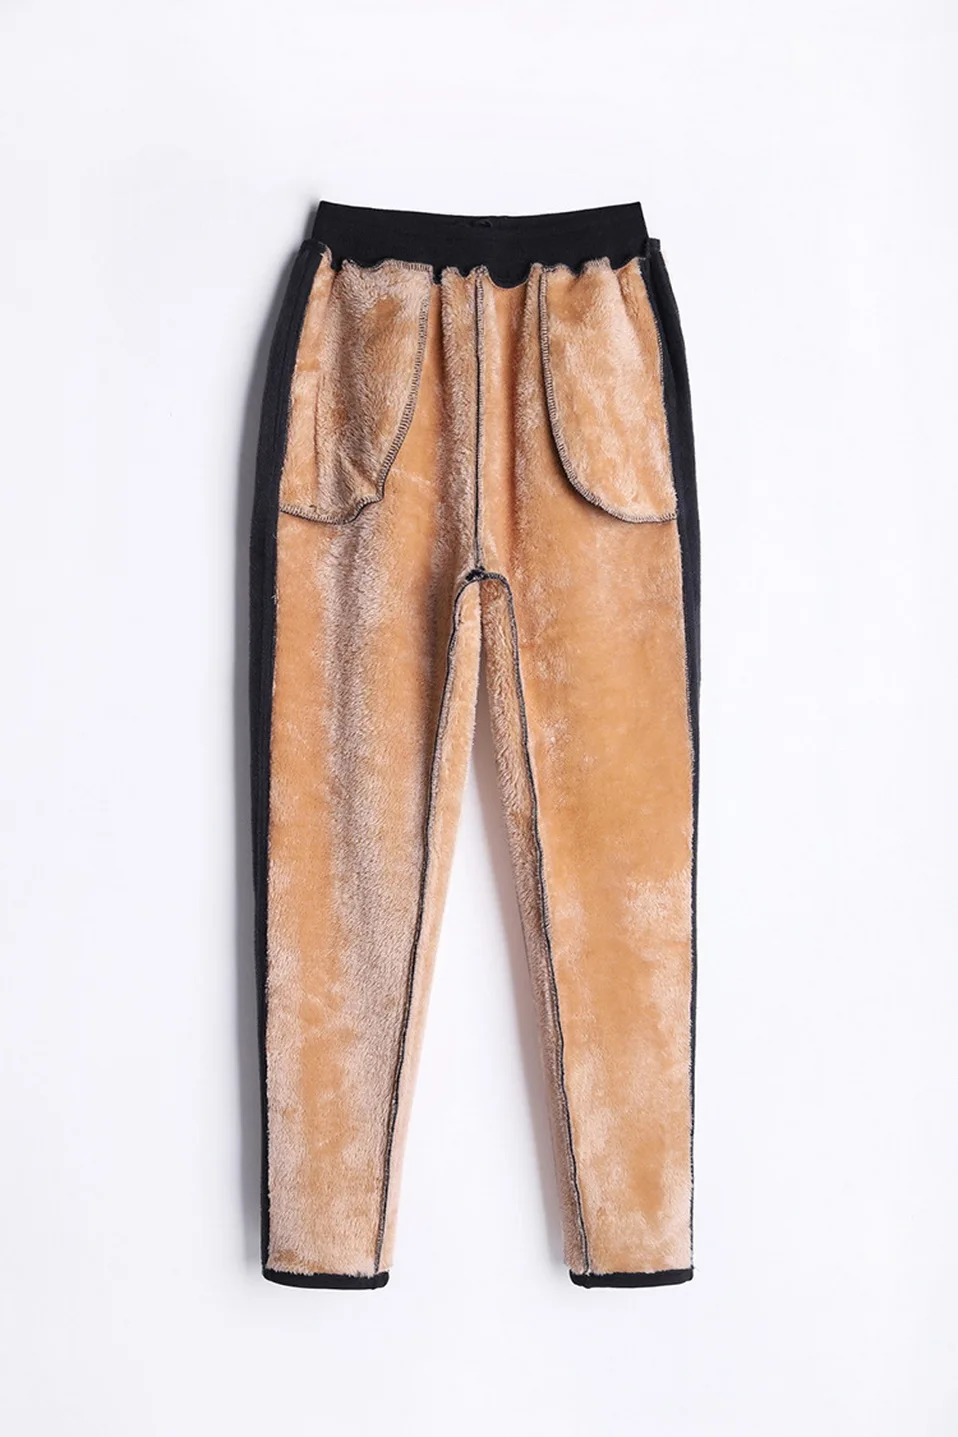 JORSEA женские джоггеры зимние теплые штаны в полоску флисовые шаровары свободные женские толстые мягкие бархатные теплые брюки уличная одежда 5XL